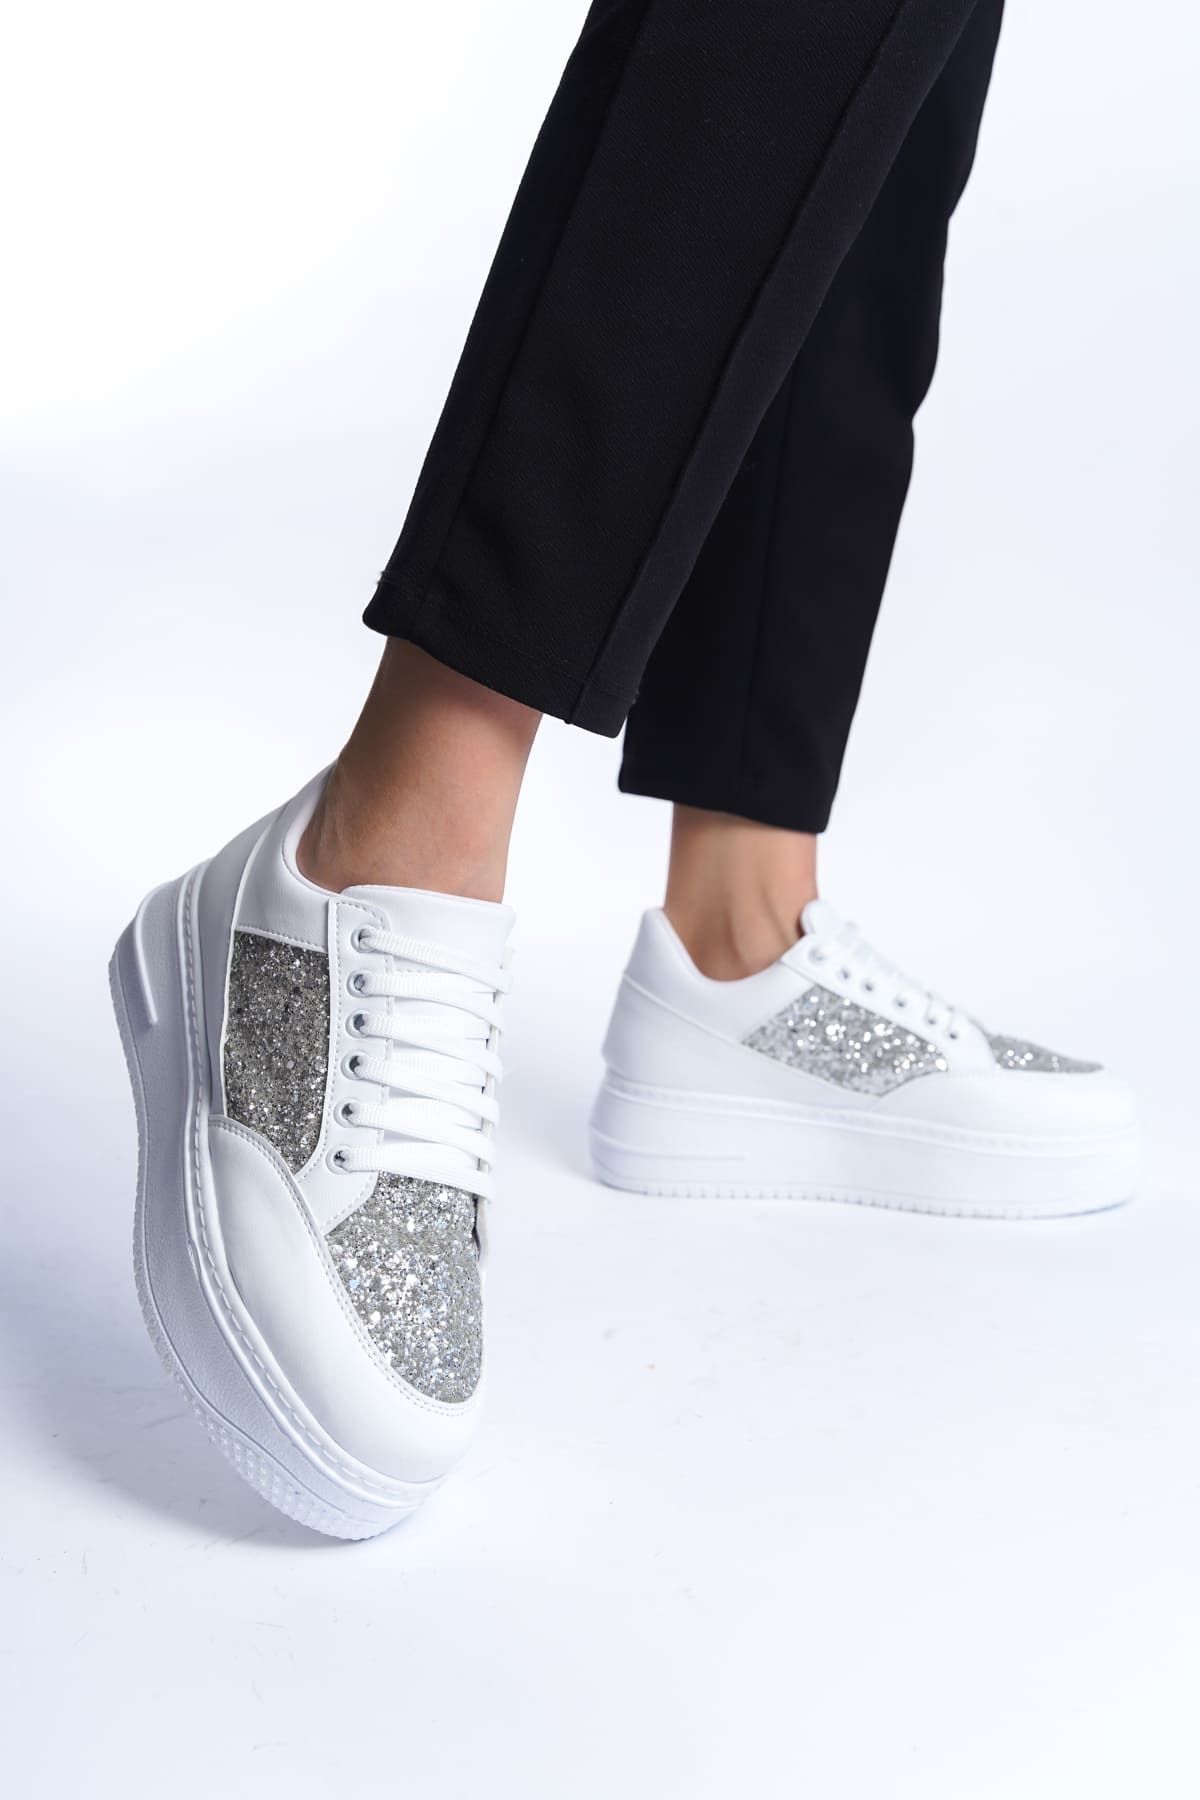 Mardel Store NAOMI Bağcıklı Ortopedik Taban Simli Kadın Sneaker Ayakkabı BT Beyaz